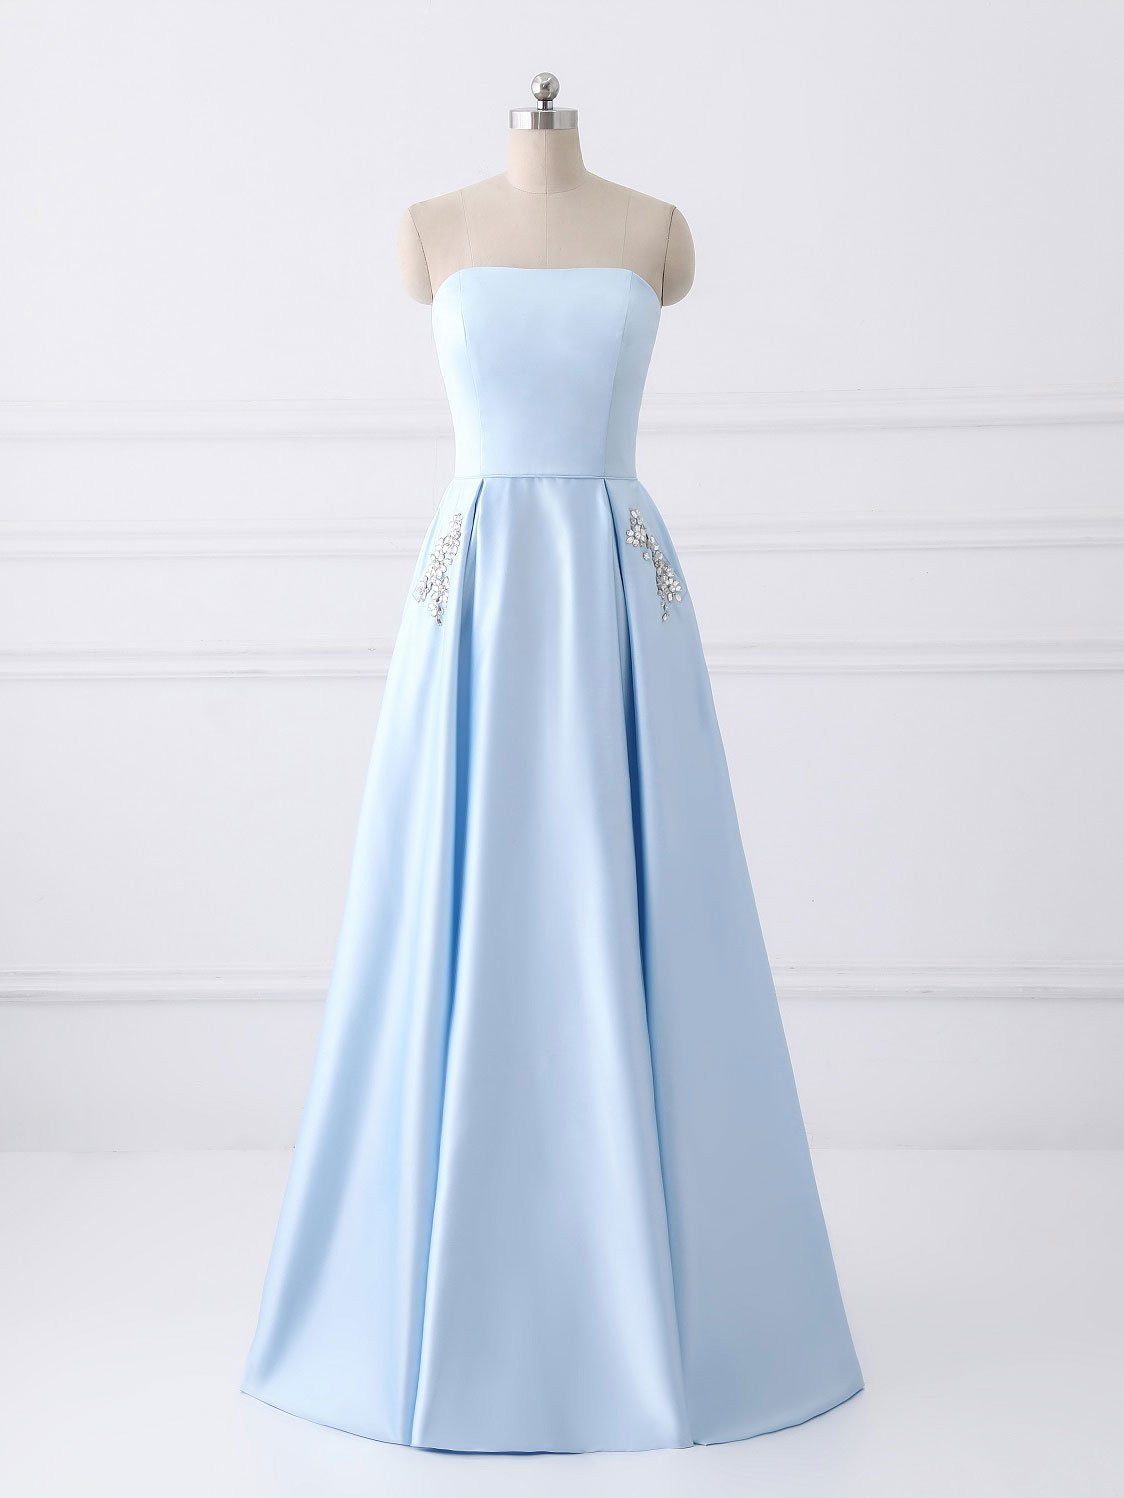 Strapless A-line Blue Satin Prom Dress Floor Length Women Evening Dress 2019